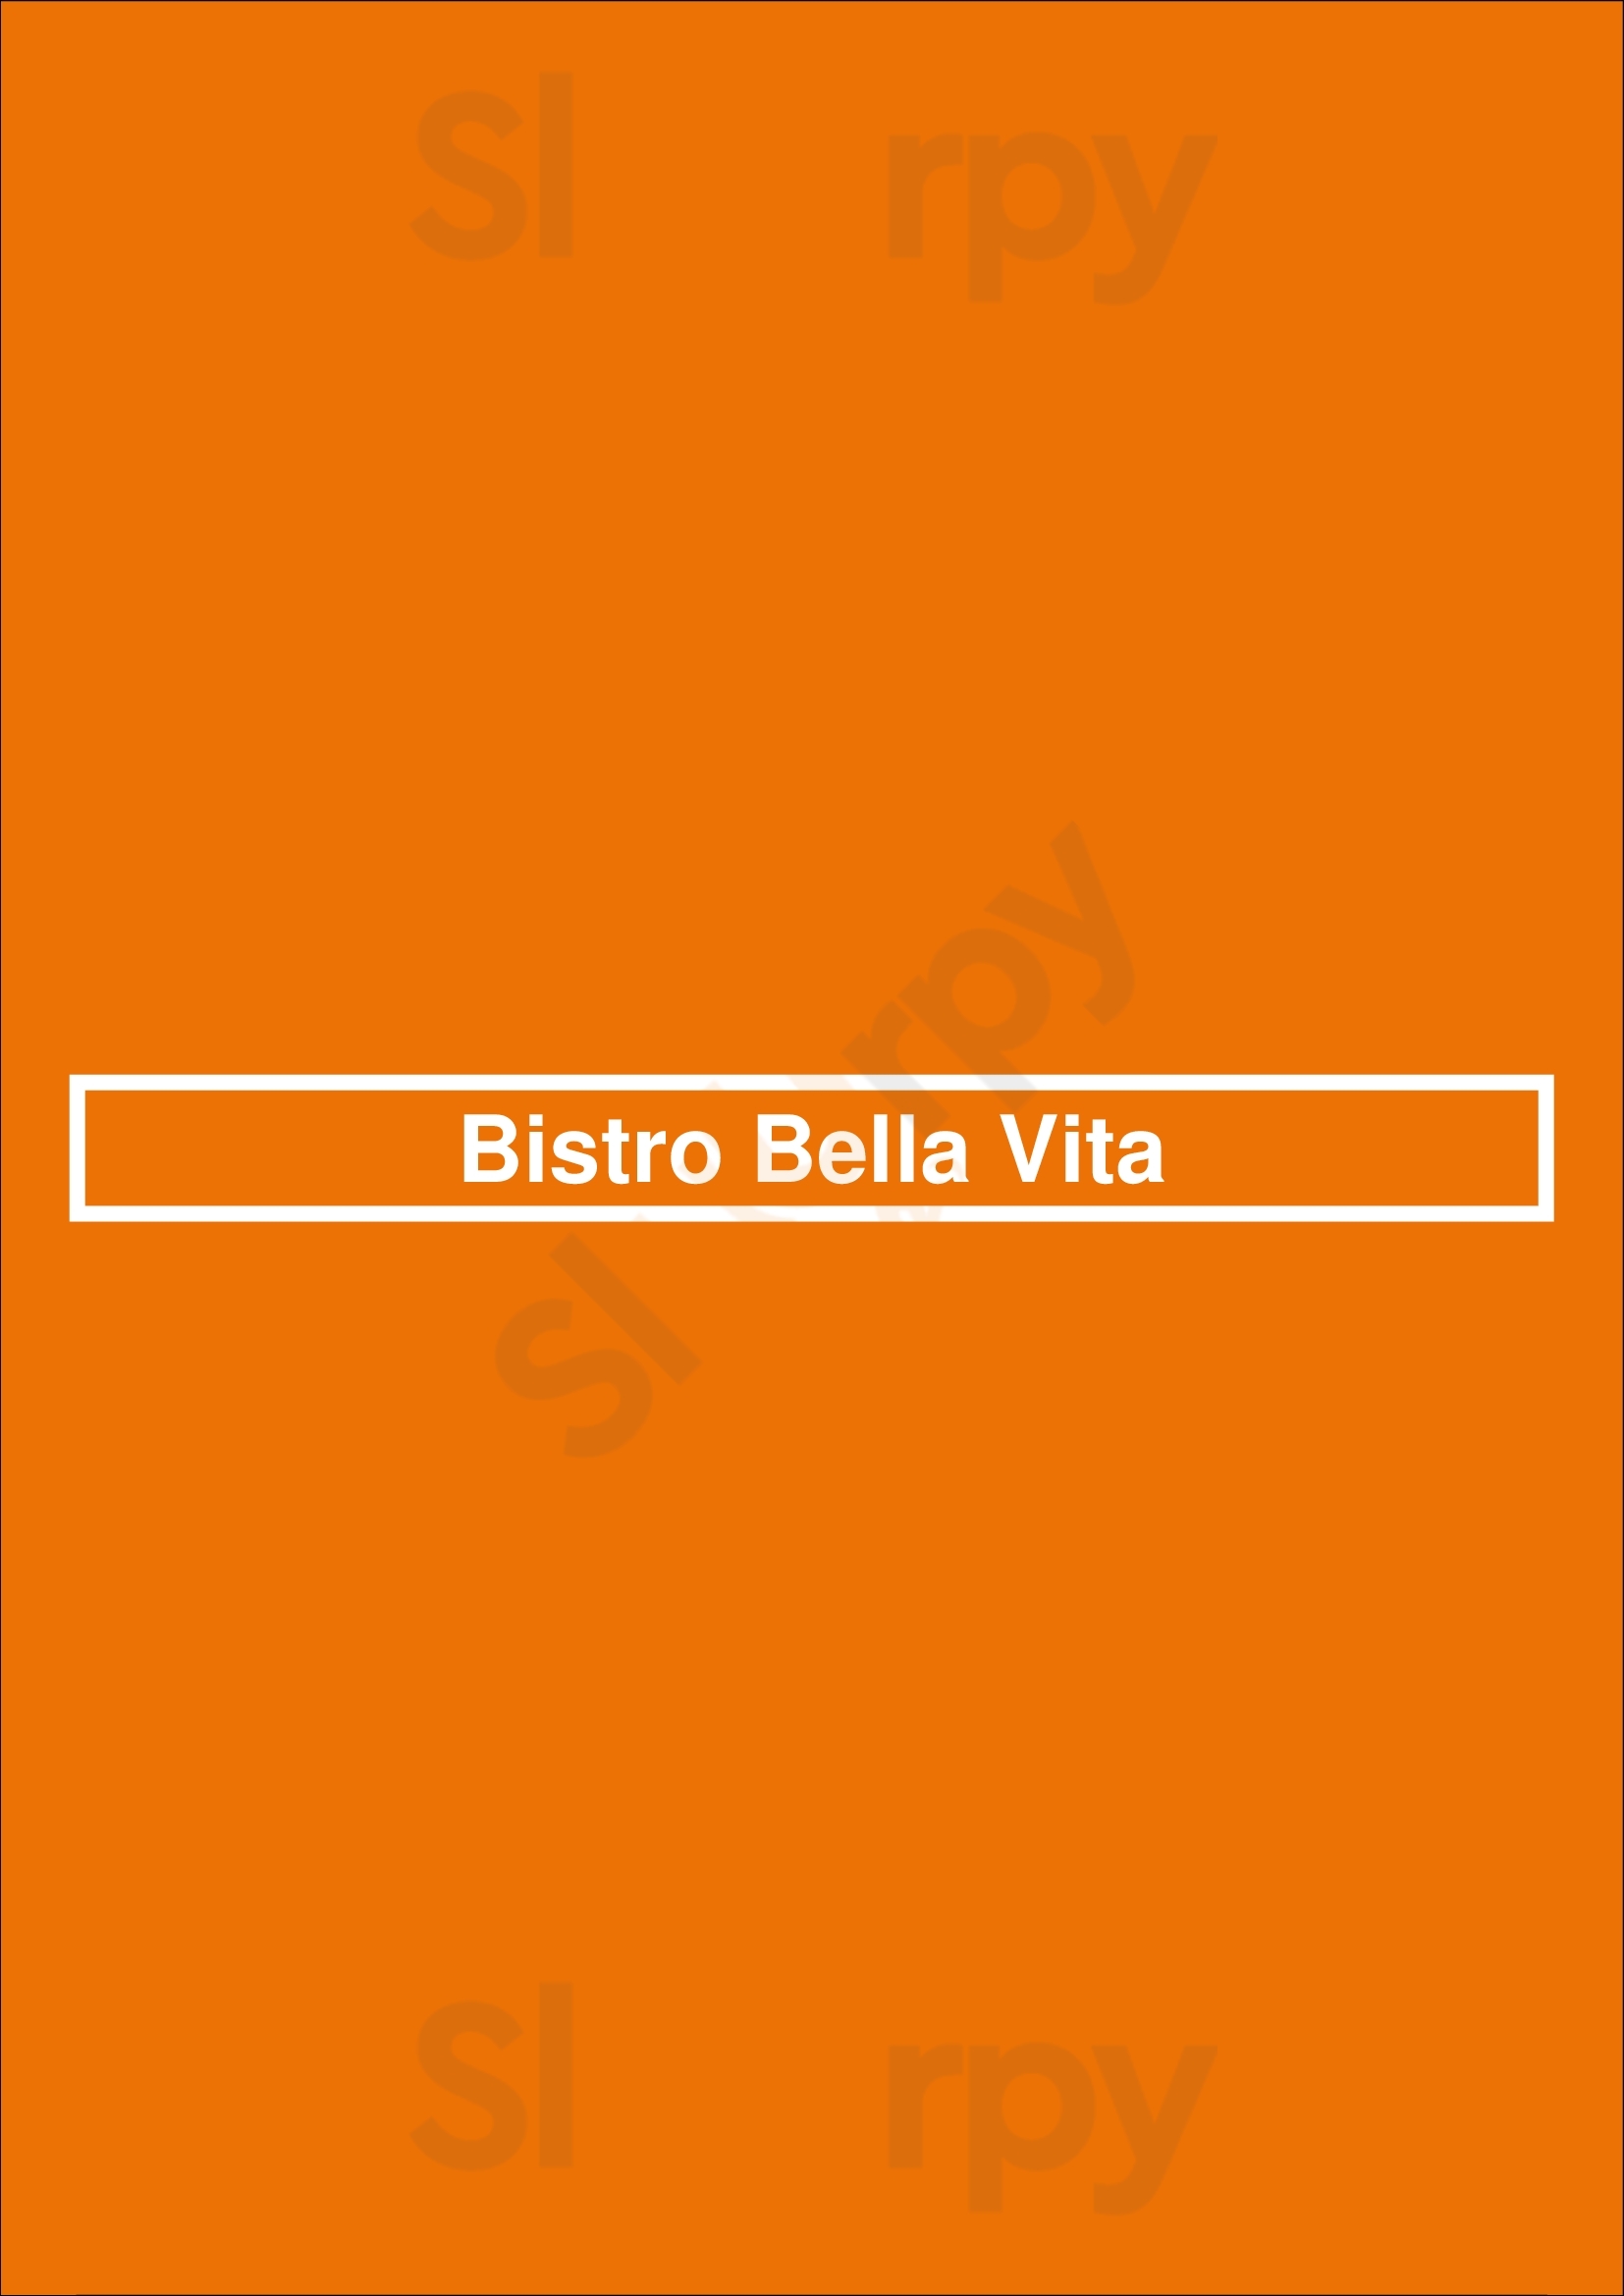 Bistro Bella Vita Grand Rapids Menu - 1